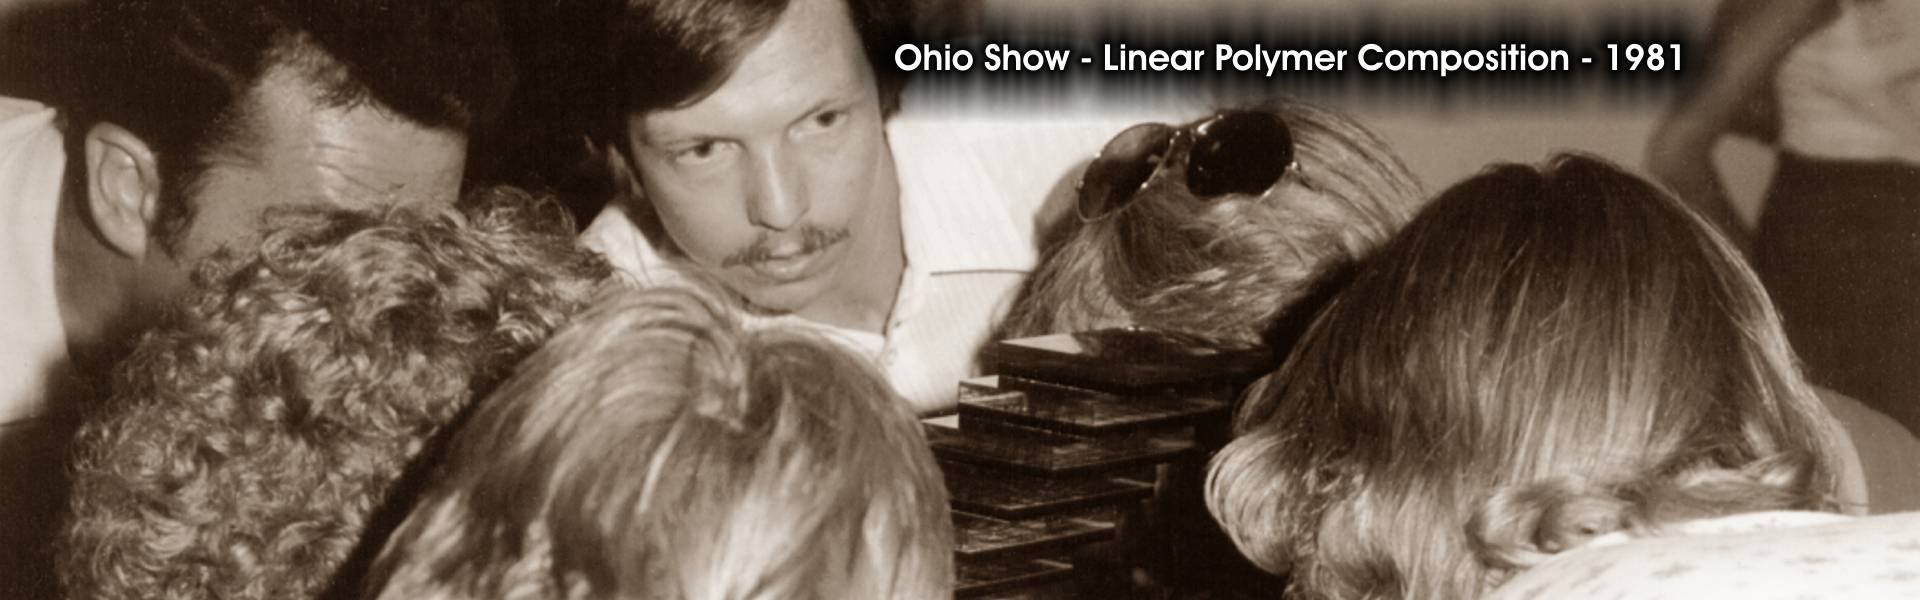 Ohio Show 1981